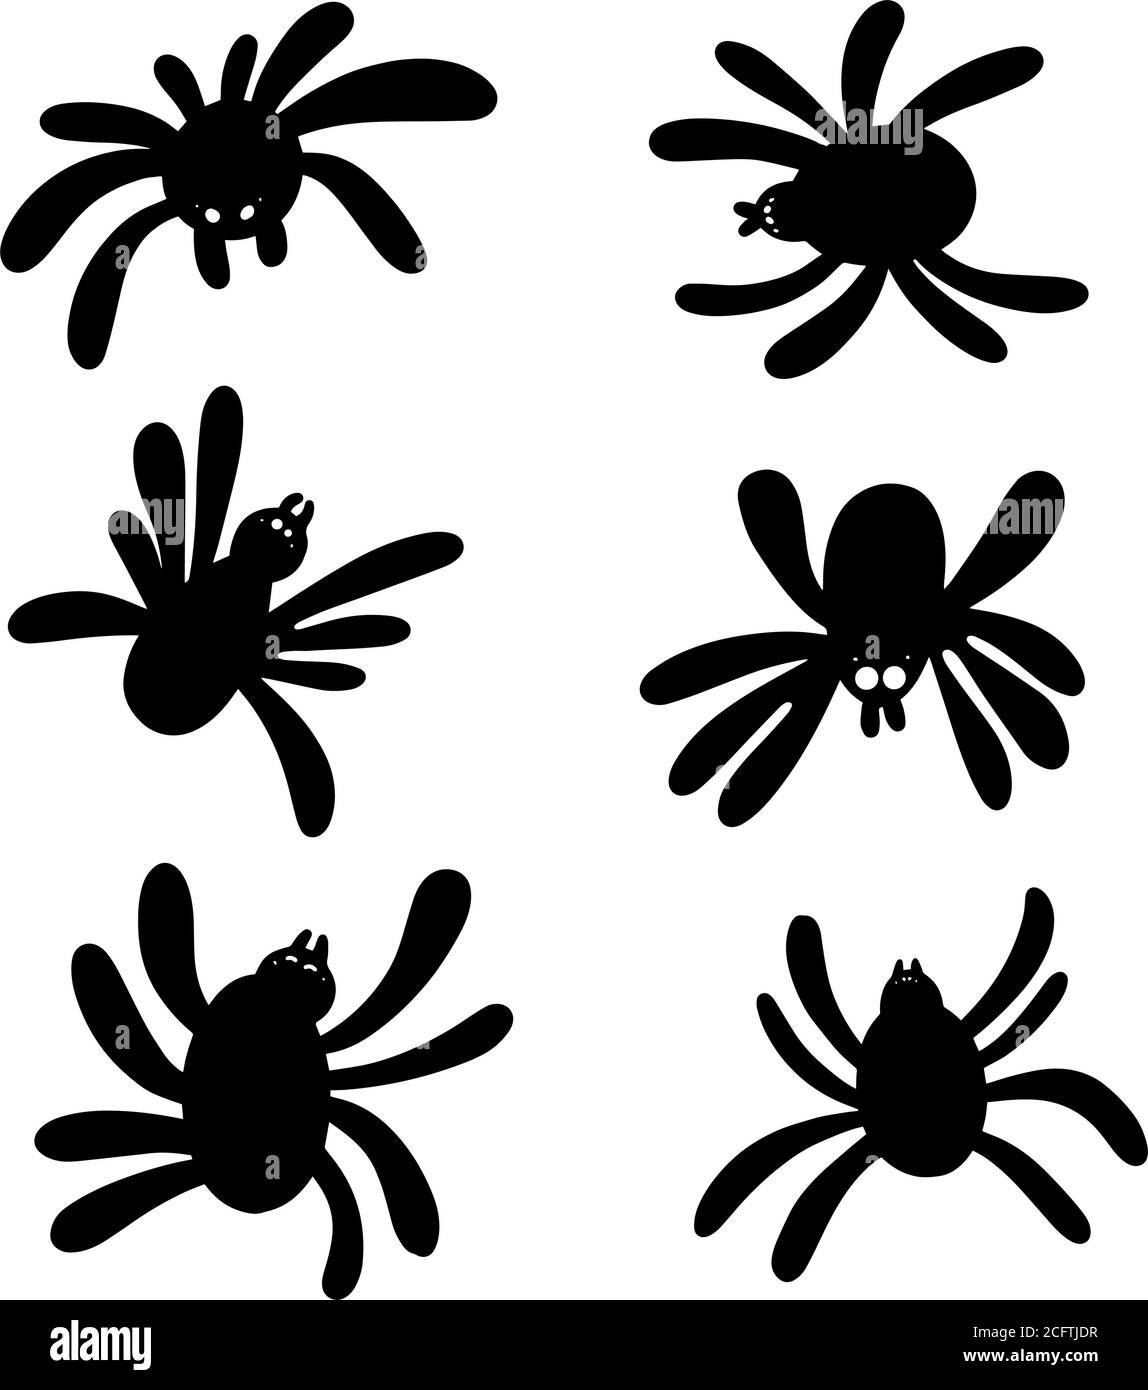 Set von schwarzen Spinnen.Süße schwarze Spinne Stock-Vektorgrafik - Alamy